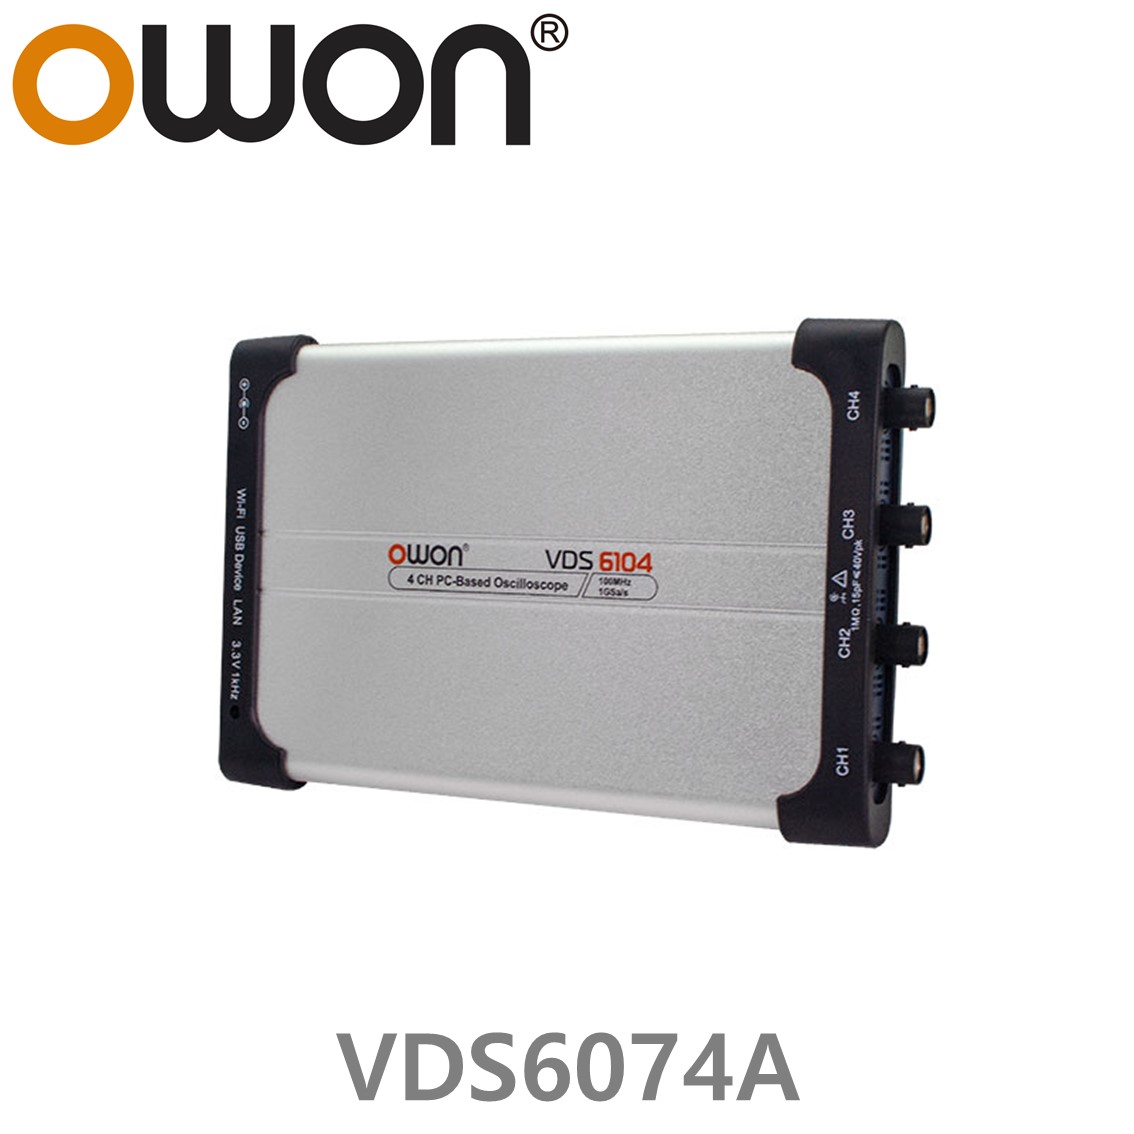 [ OWON ] VDS6074A PC 디지탈 오실로스코프 70MHz, 4CH, 1GS/s